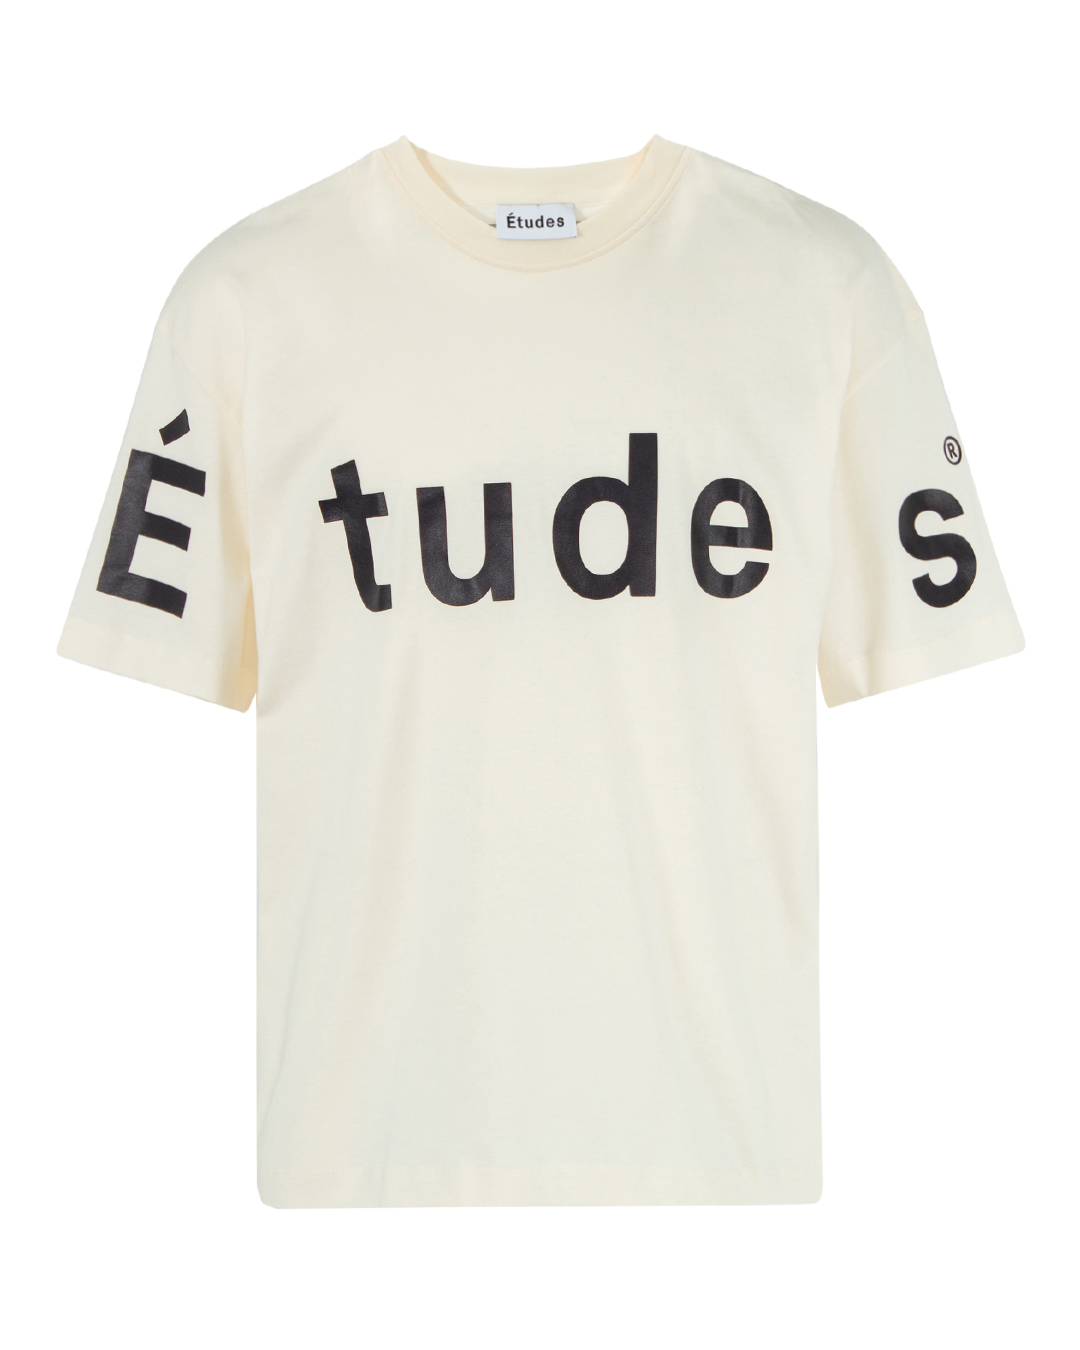 Études с принтом логотипа бренда  артикул  марки Études купить за 18000 руб.